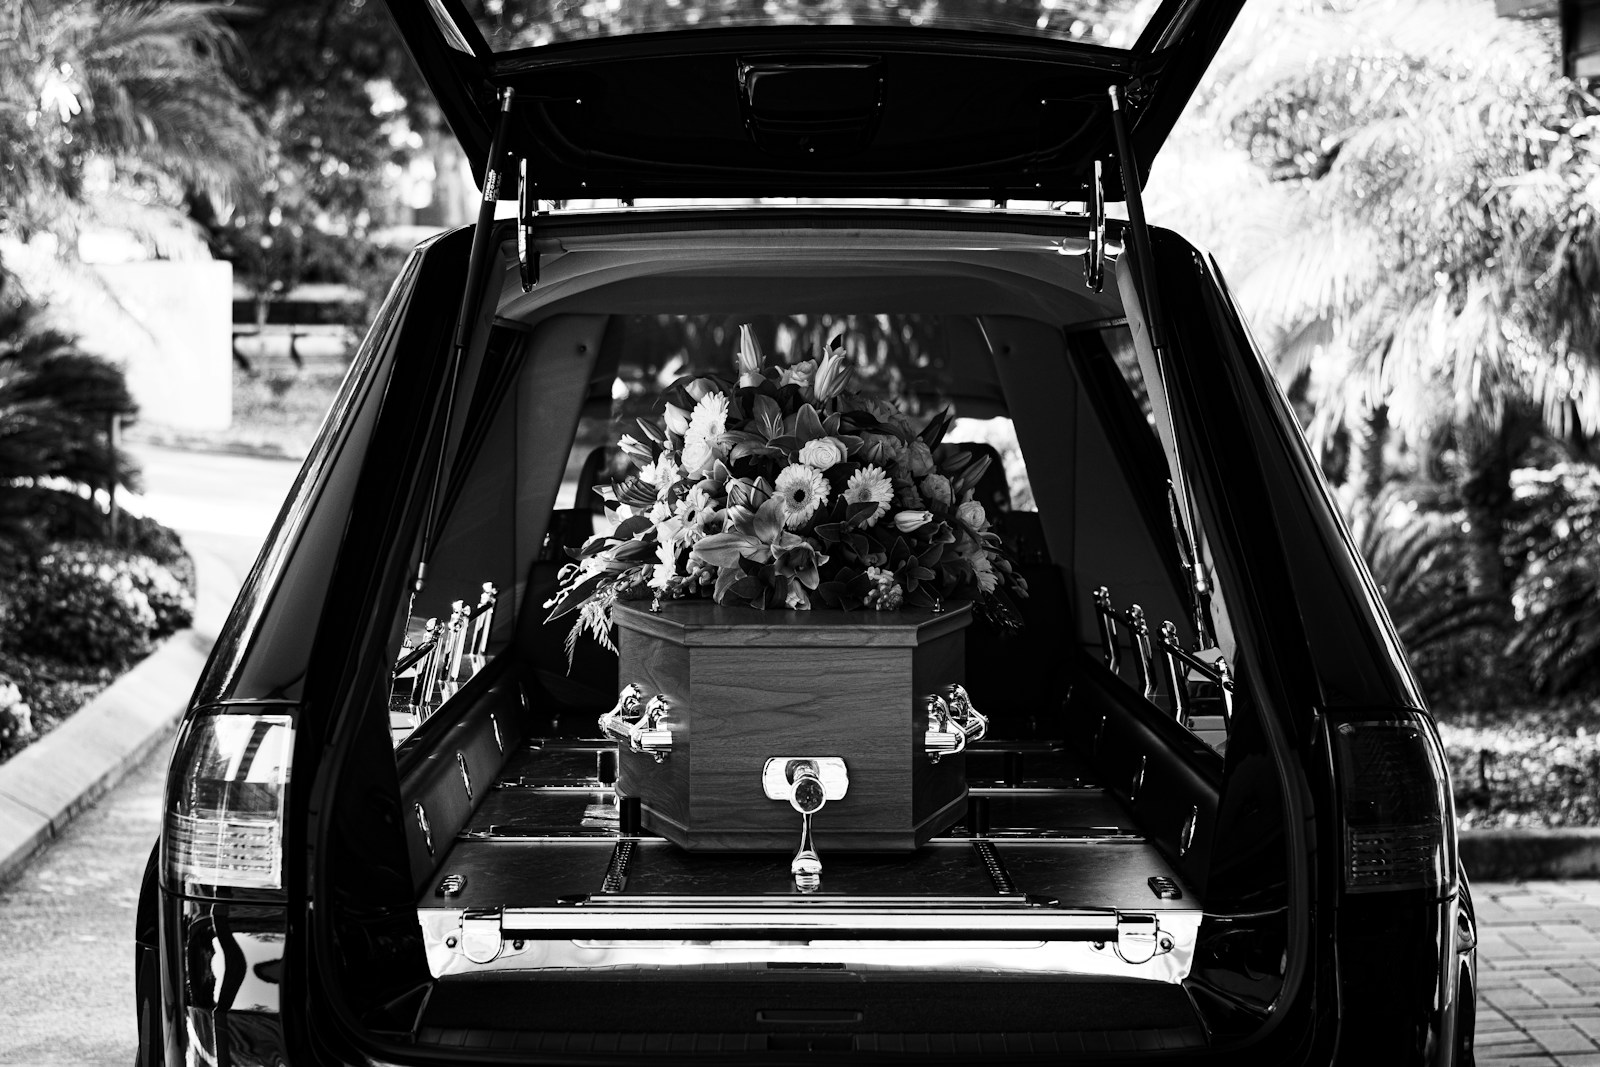 Bedemand Hvidovre – Din guide til valg af begravelsesforretning